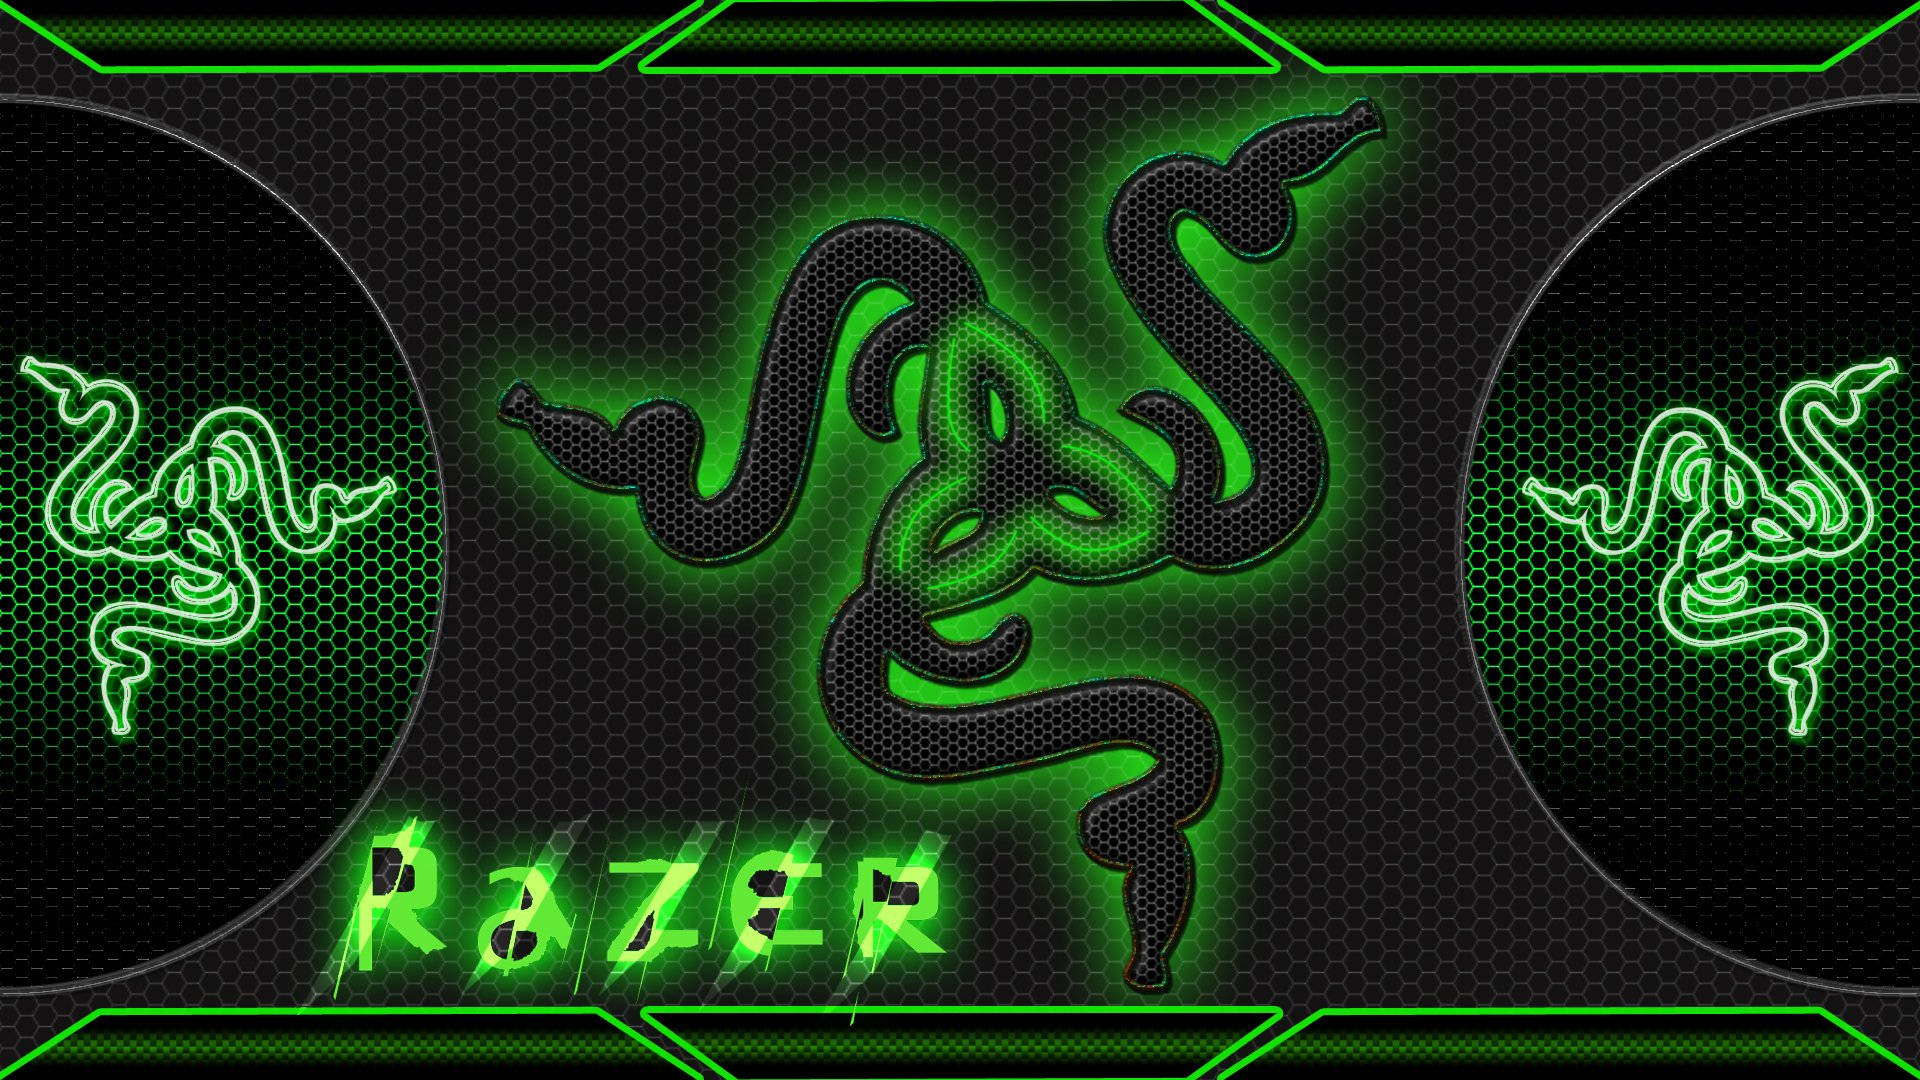 Razer Pc Logos In Green Wallpaper: Cùng hiện thực hoá khát khao của mình với hình nền Razer PC logos in Green wallpaper. Sự kết hợp giữa màu xanh lá đặc trưng của Razer và các hình ảnh ấn tượng sẽ khiến bạn phải chú ý ngay tức thì. Hãy cho màn hình của bạn thật sự đẹp và thú vị.